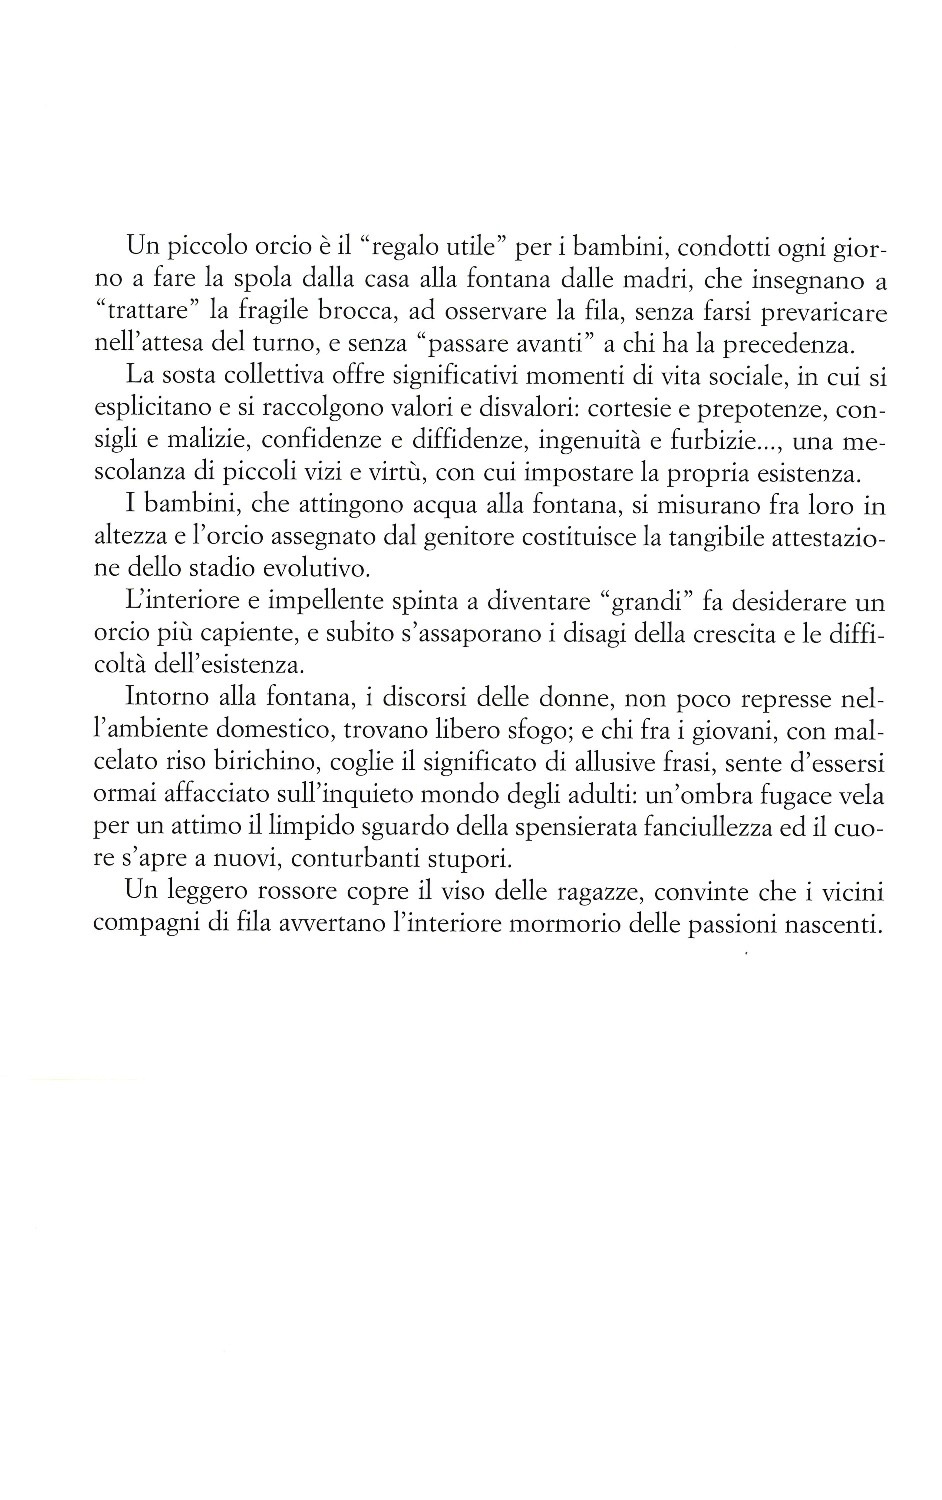 La torr i arduna tutti 2009 p.039